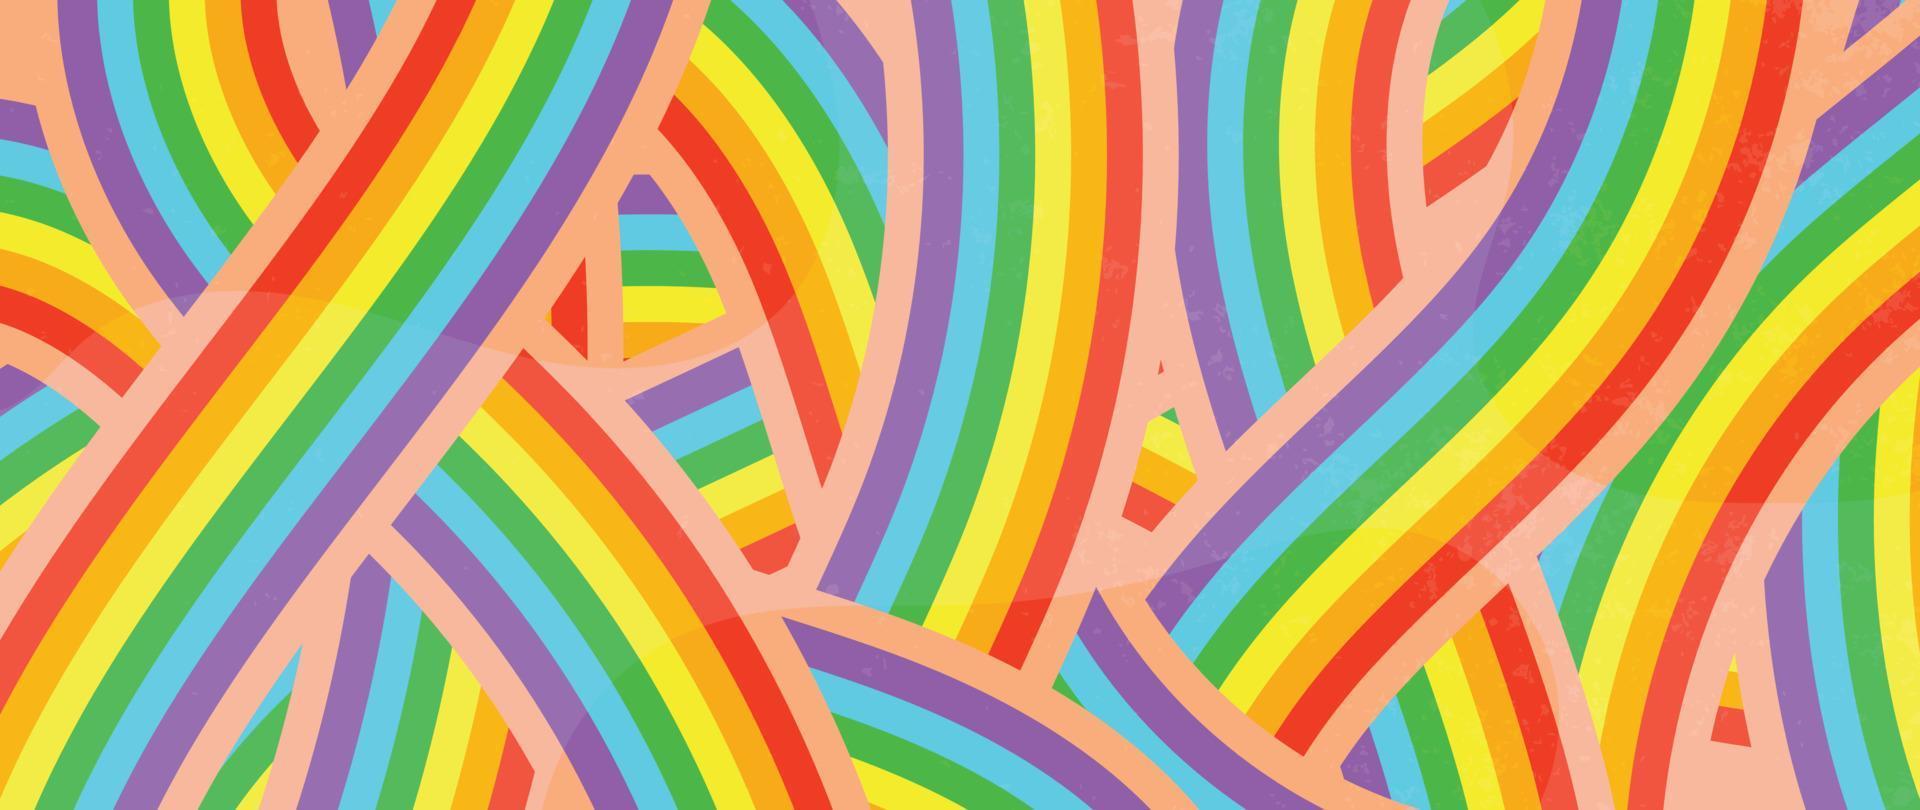 gelukkig trots maand achtergrond. lgbtq gemeenschap symbolen met regenboog linten, grunge textuur. ontwerp voor viering tegen geweld, biseksueel, transgender, geslacht gelijkwaardigheid, rechten concept. vector